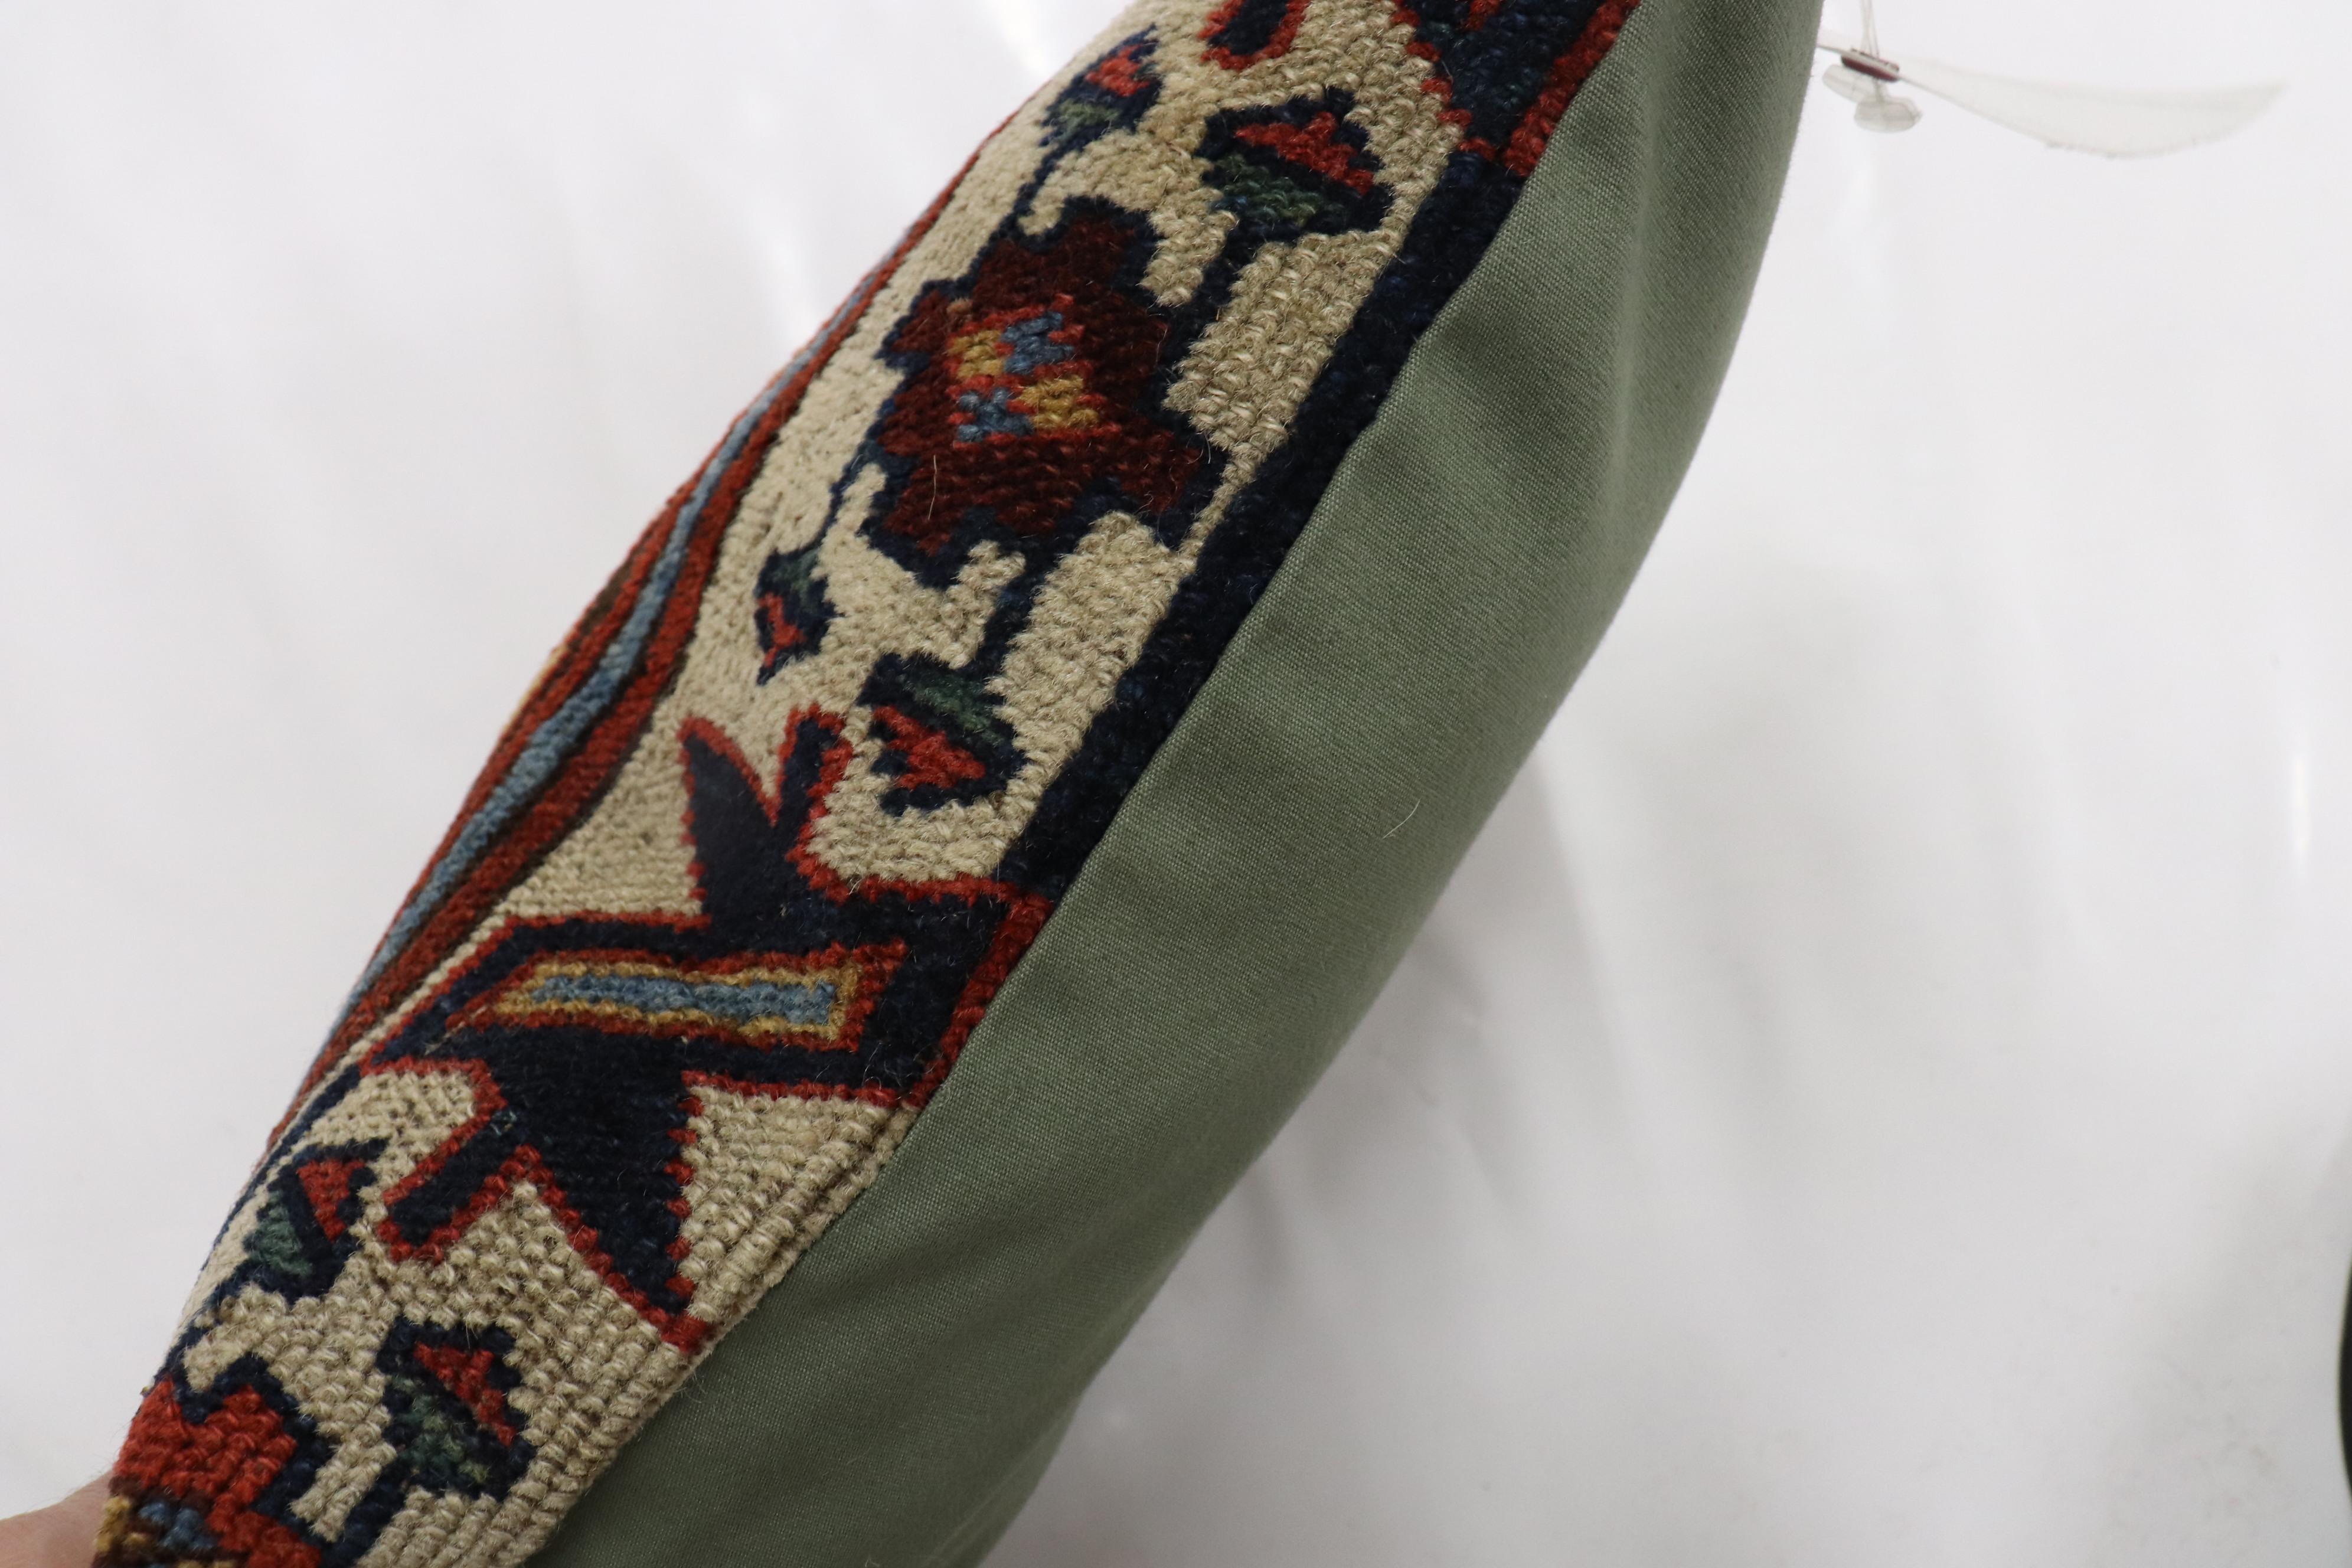 Coussin de petite taille fabriqué à partir d'un tapis persan du Nord-Ouest du début du 20e siècle.

Mesures : 11'' x 15''